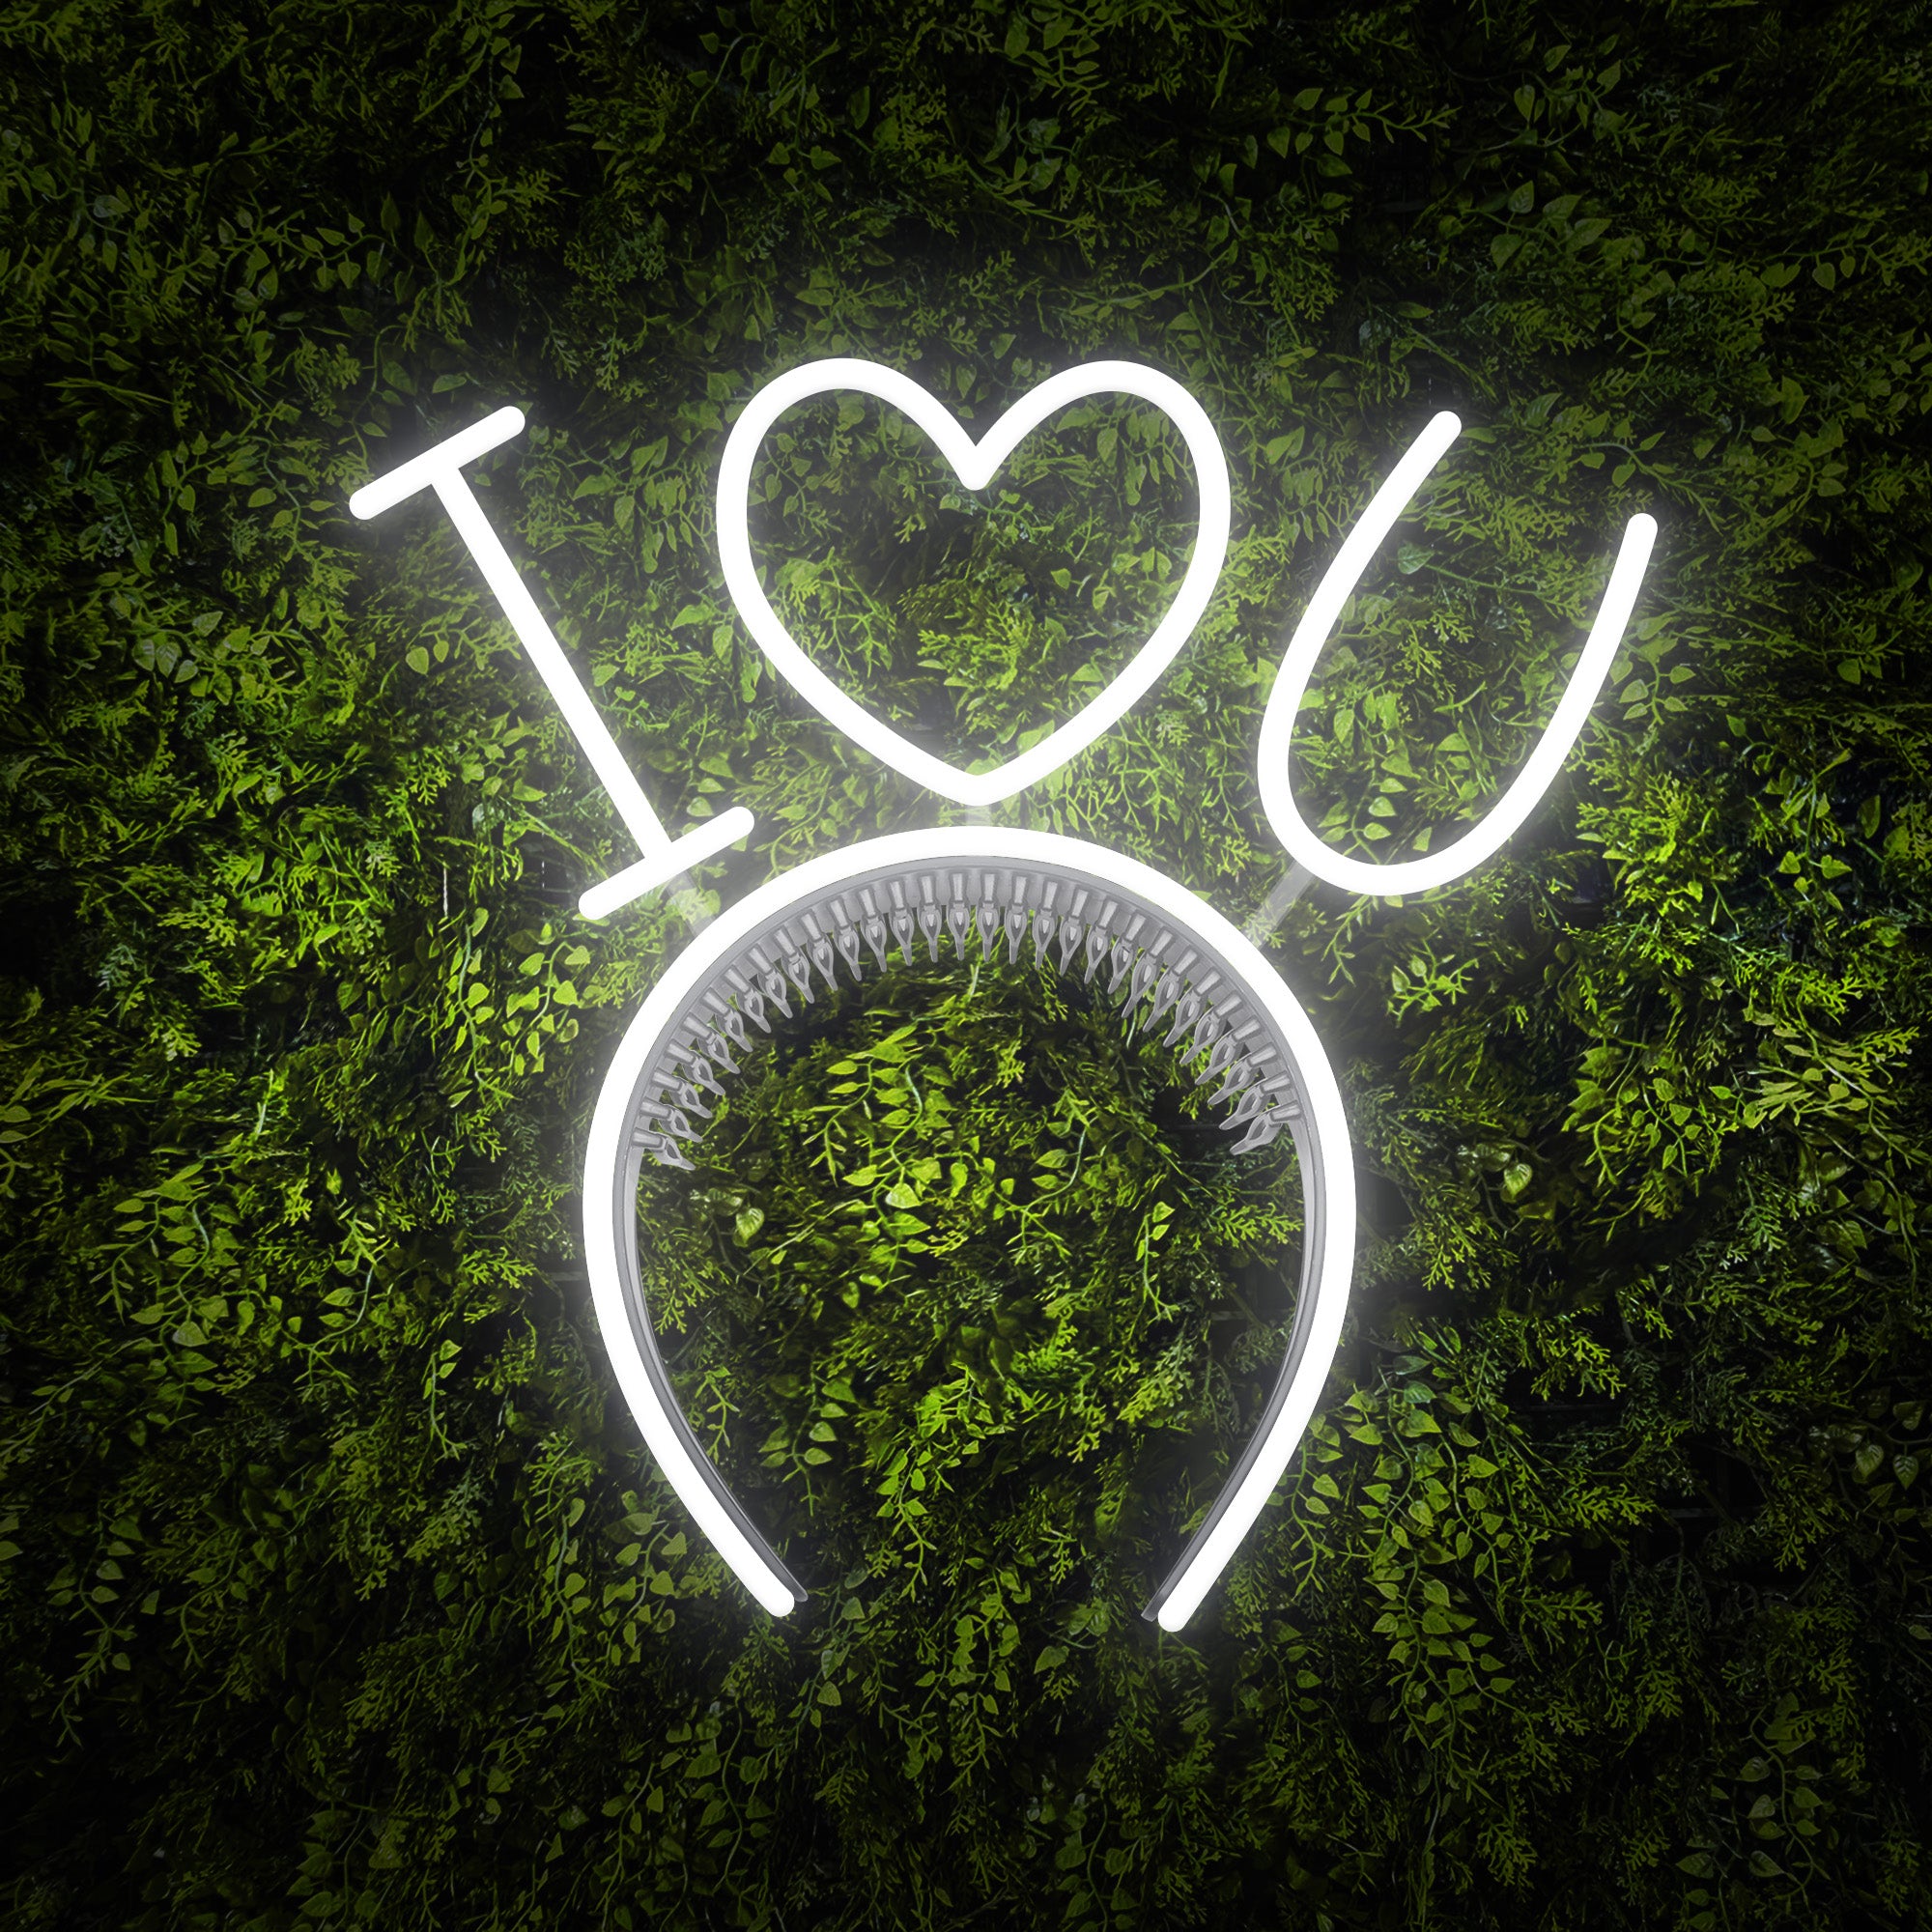 "I Heart U" Headband Neon Sign